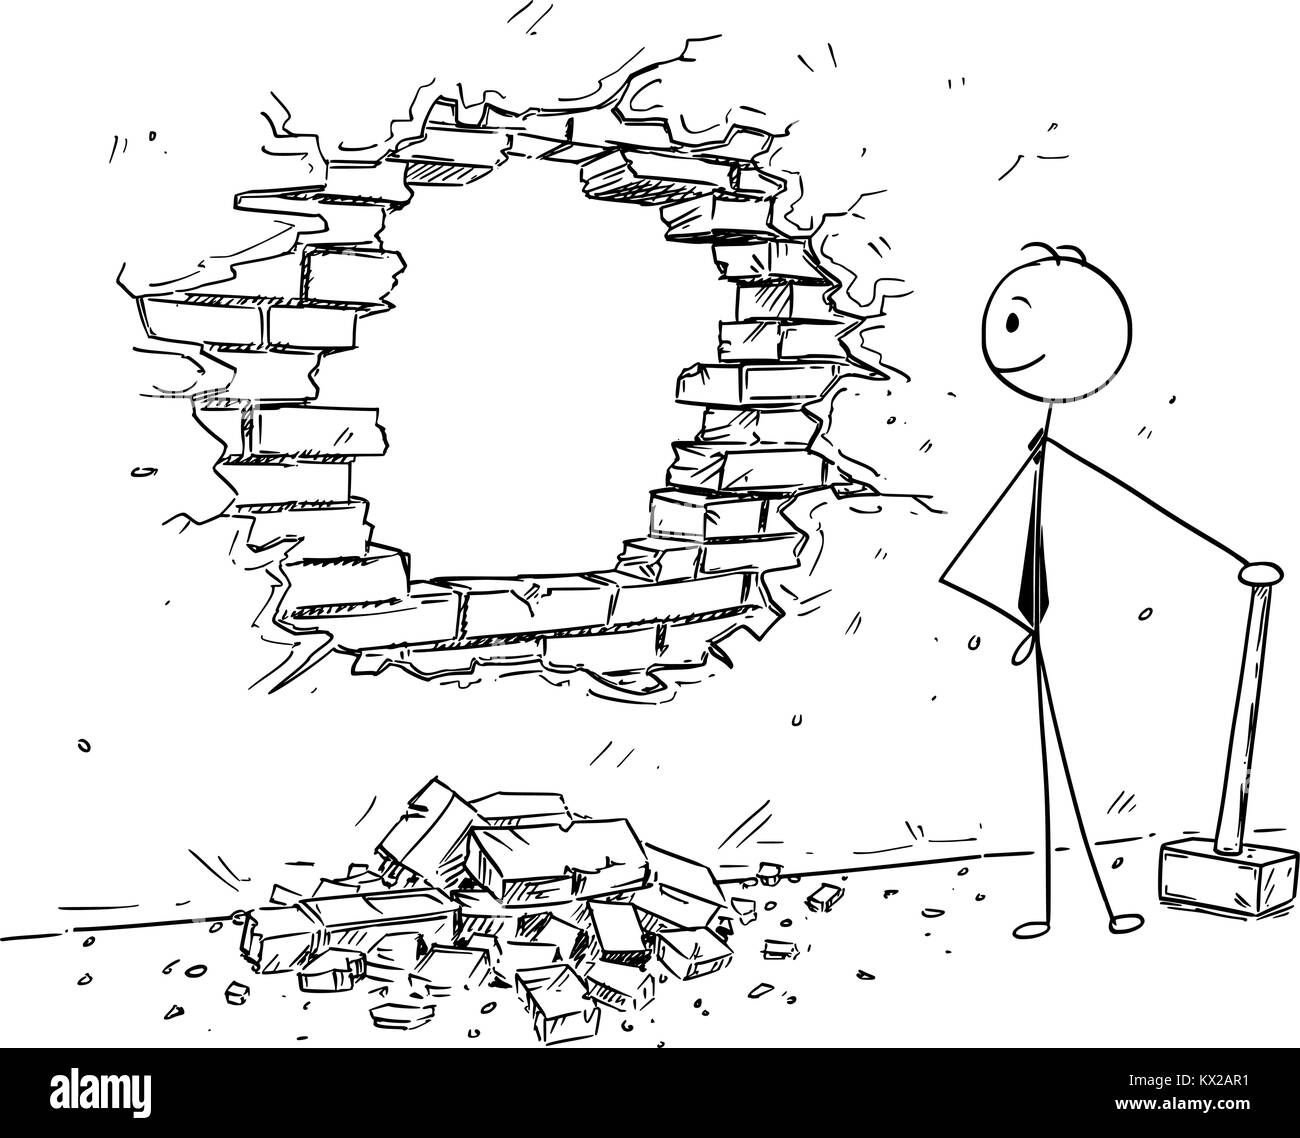 Cartoon stick man dessin illustration conceptuelle du couple marteau pour briser le trou dans le mur. Concept d'affaires de l'élimination des obstacles et lo Illustration de Vecteur